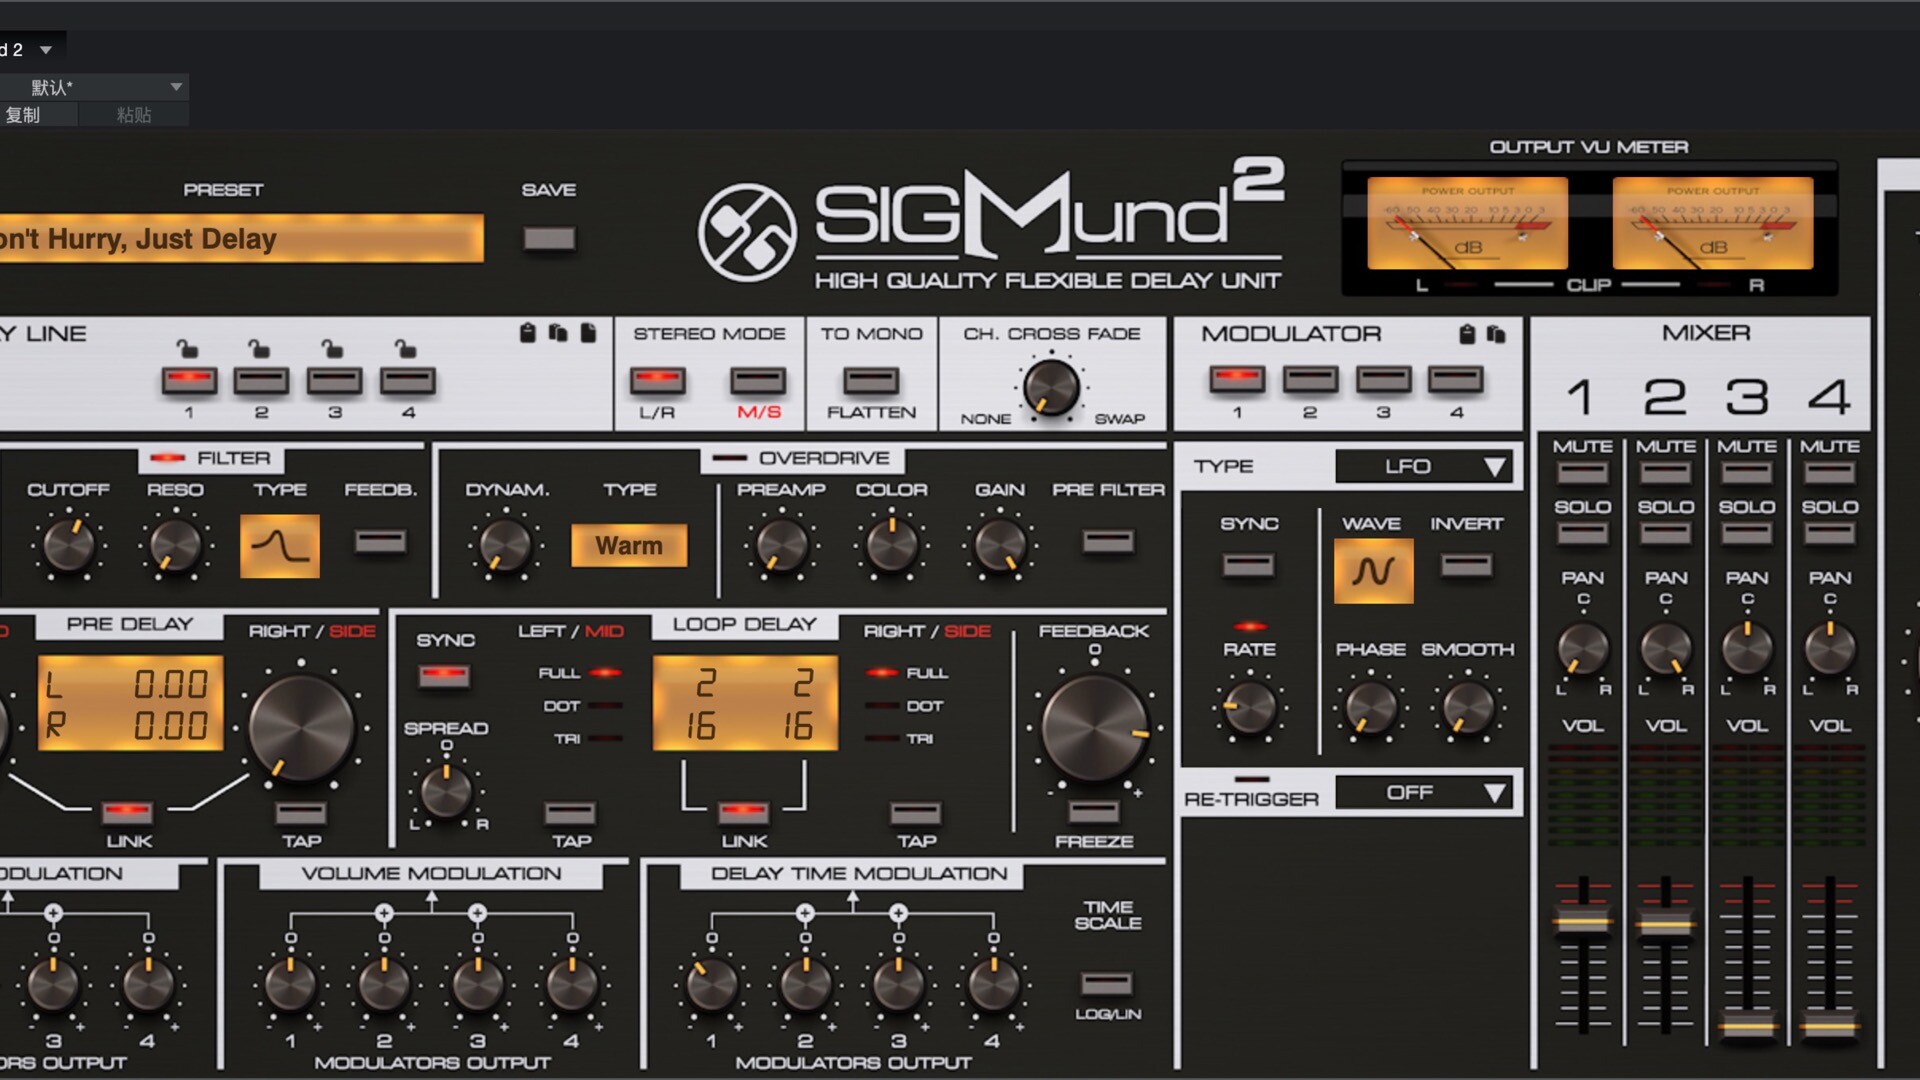 D16 Group Audio Software Sigmund2 for mac(延迟效果器)